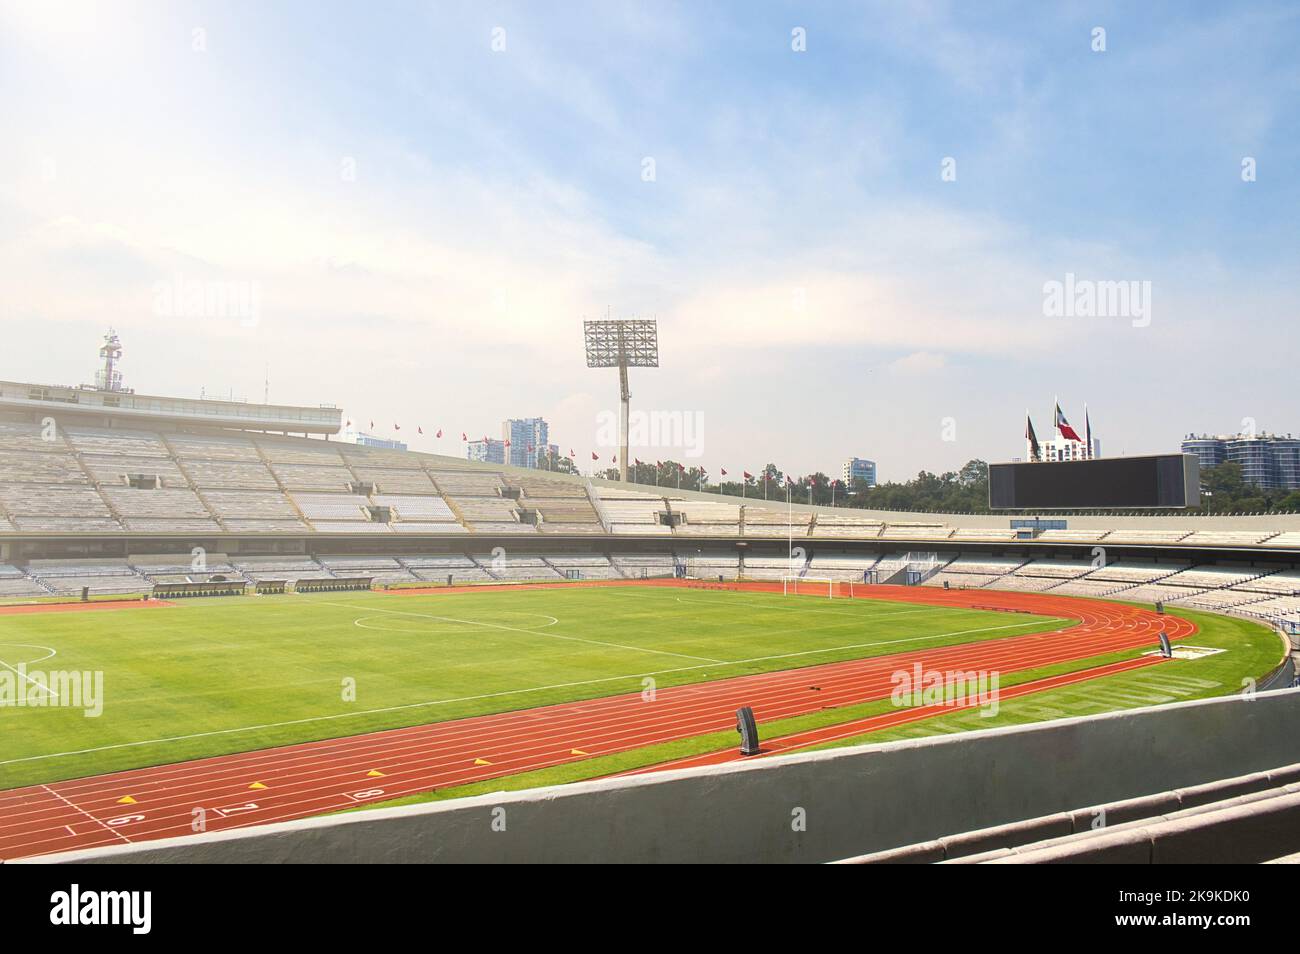 Un stade olympique universitaire de football UNAM mexique Banque D'Images